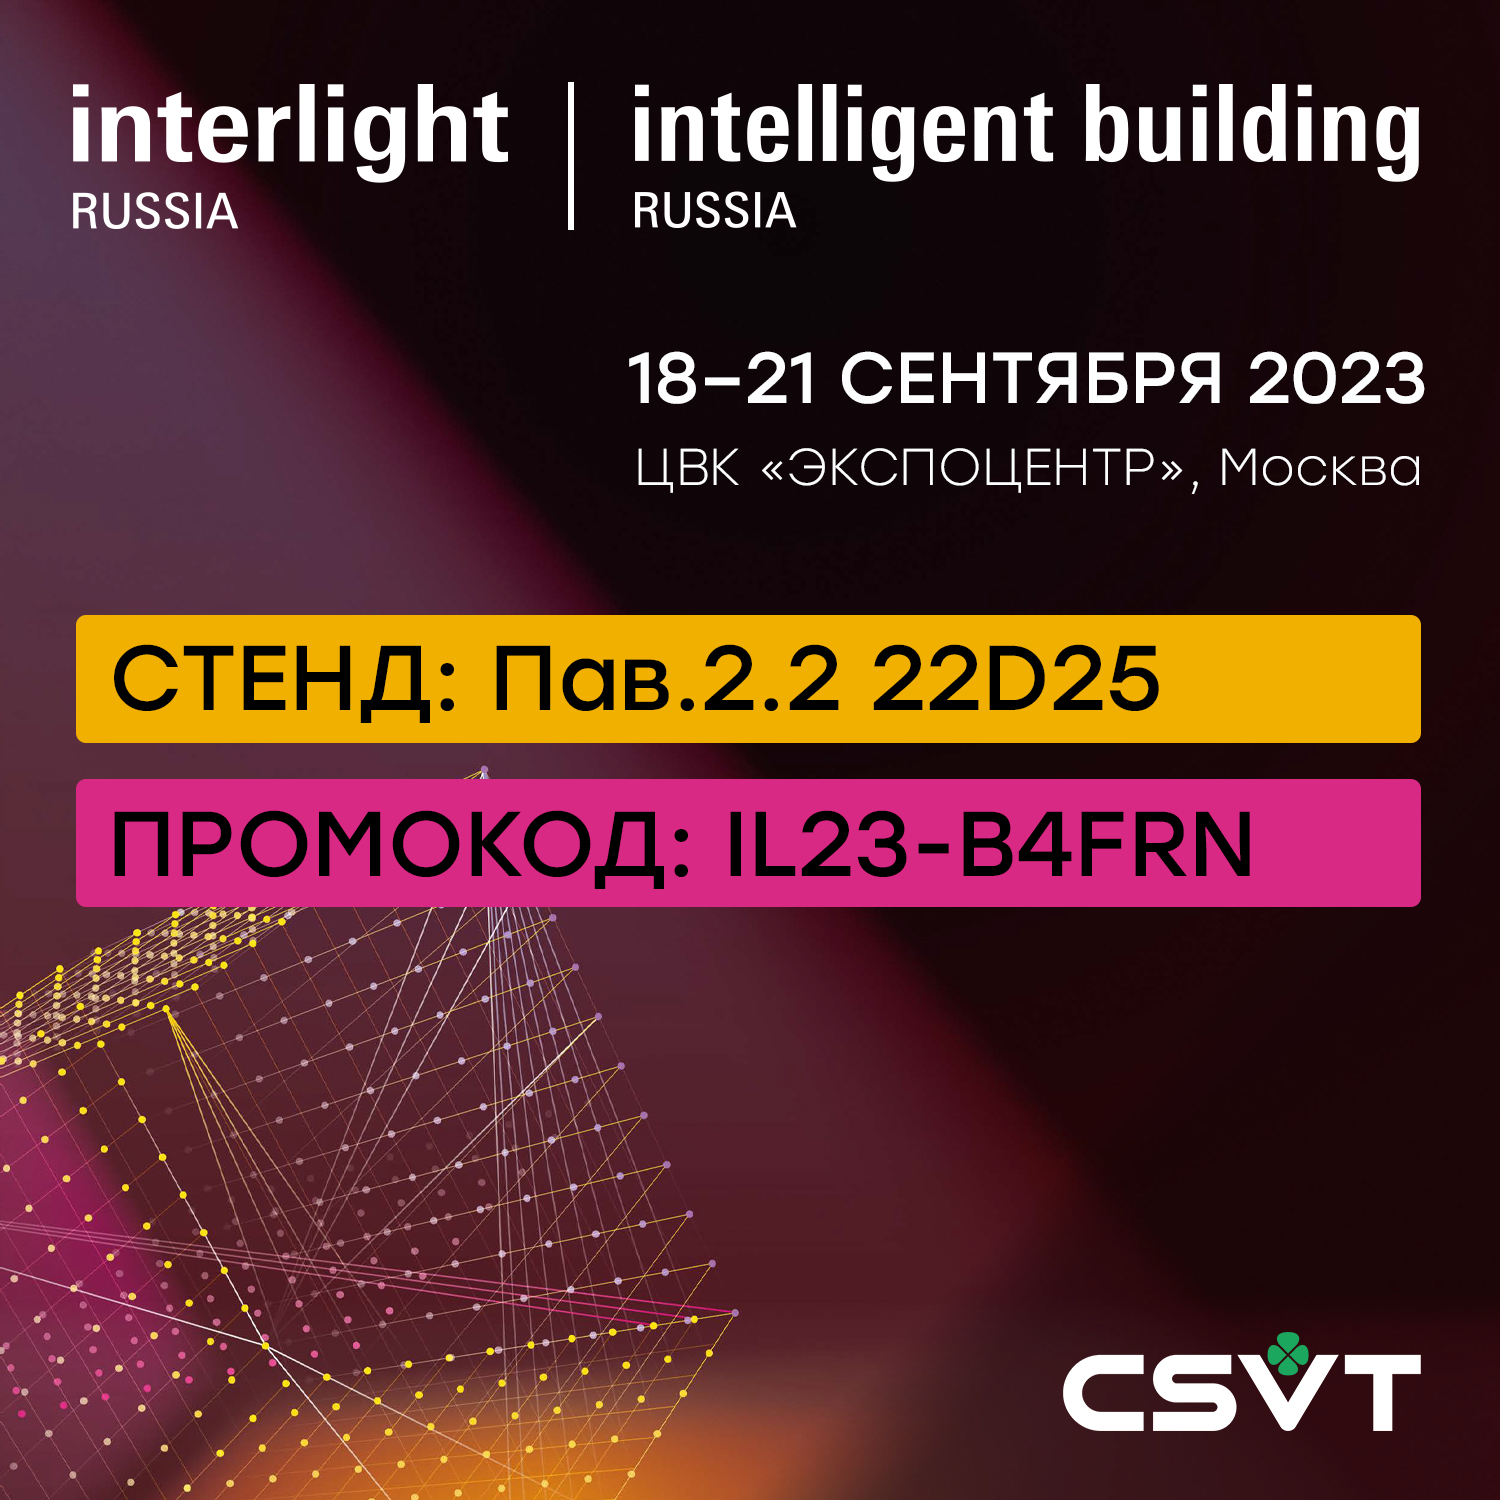 Компания CSVT - участник выставки Interlight Russia'2023